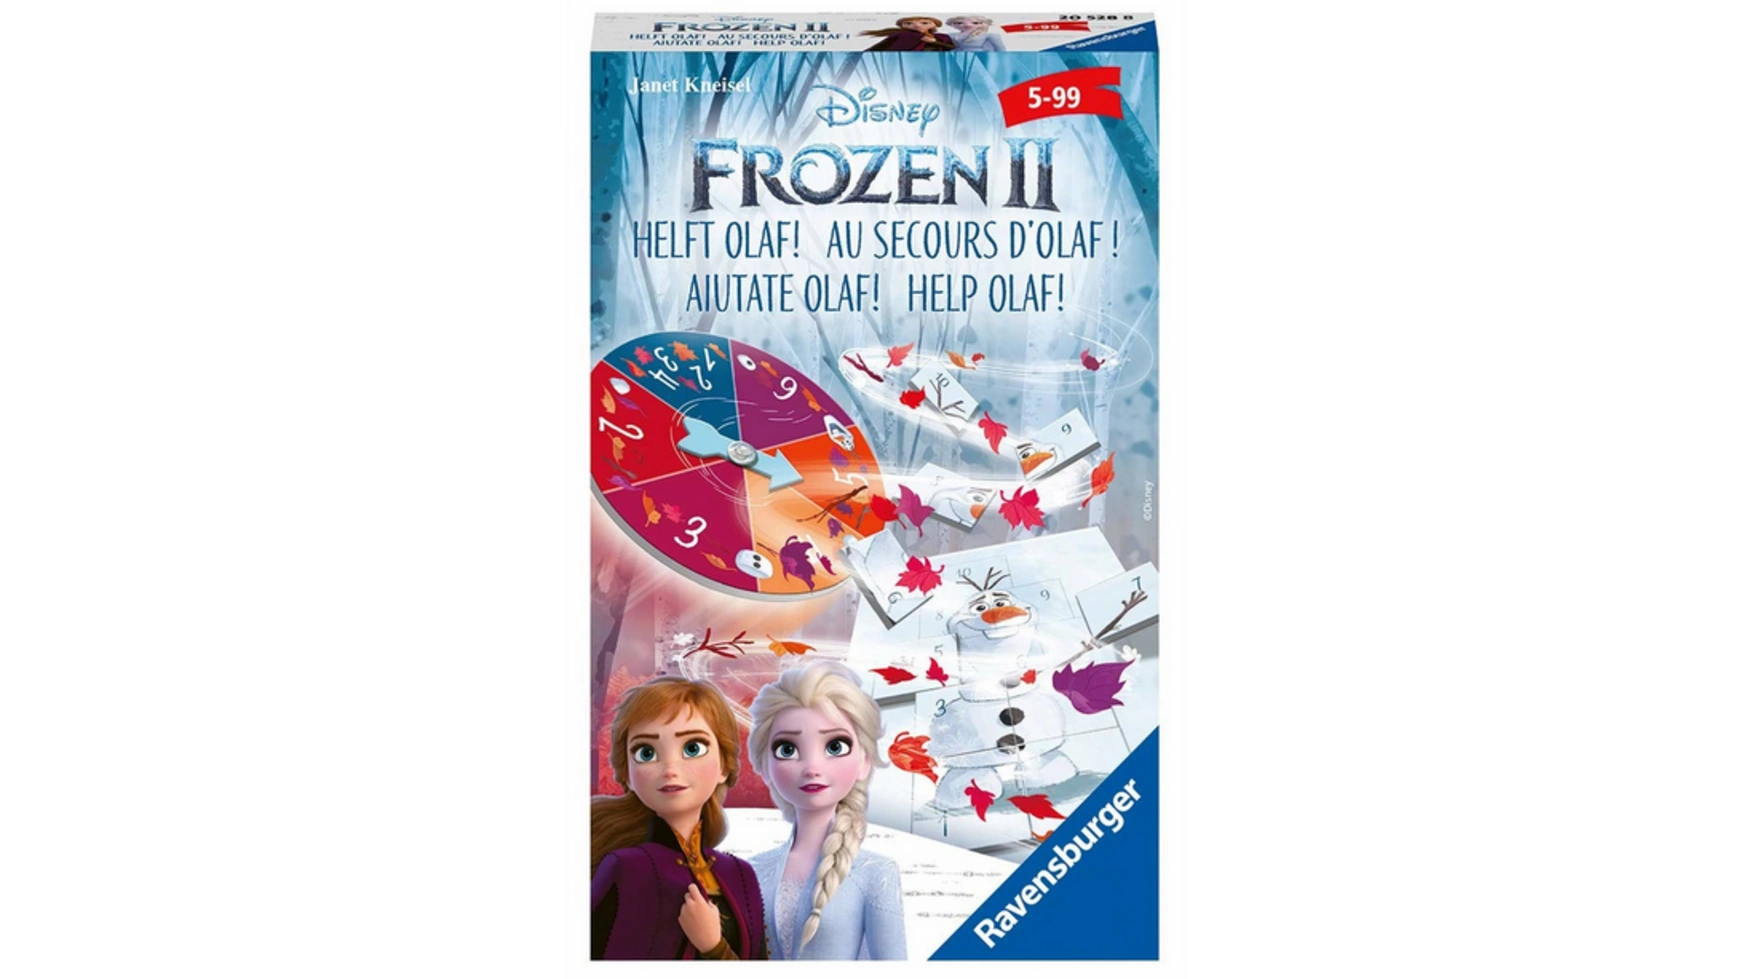 Ravensburger Spiele Frozen 2 Помогите Олафу! оригинальные коллекционные карточки с персонажами фильма холодное сердце kayou аниме периферийные принадлежности эльза олаф для детей п